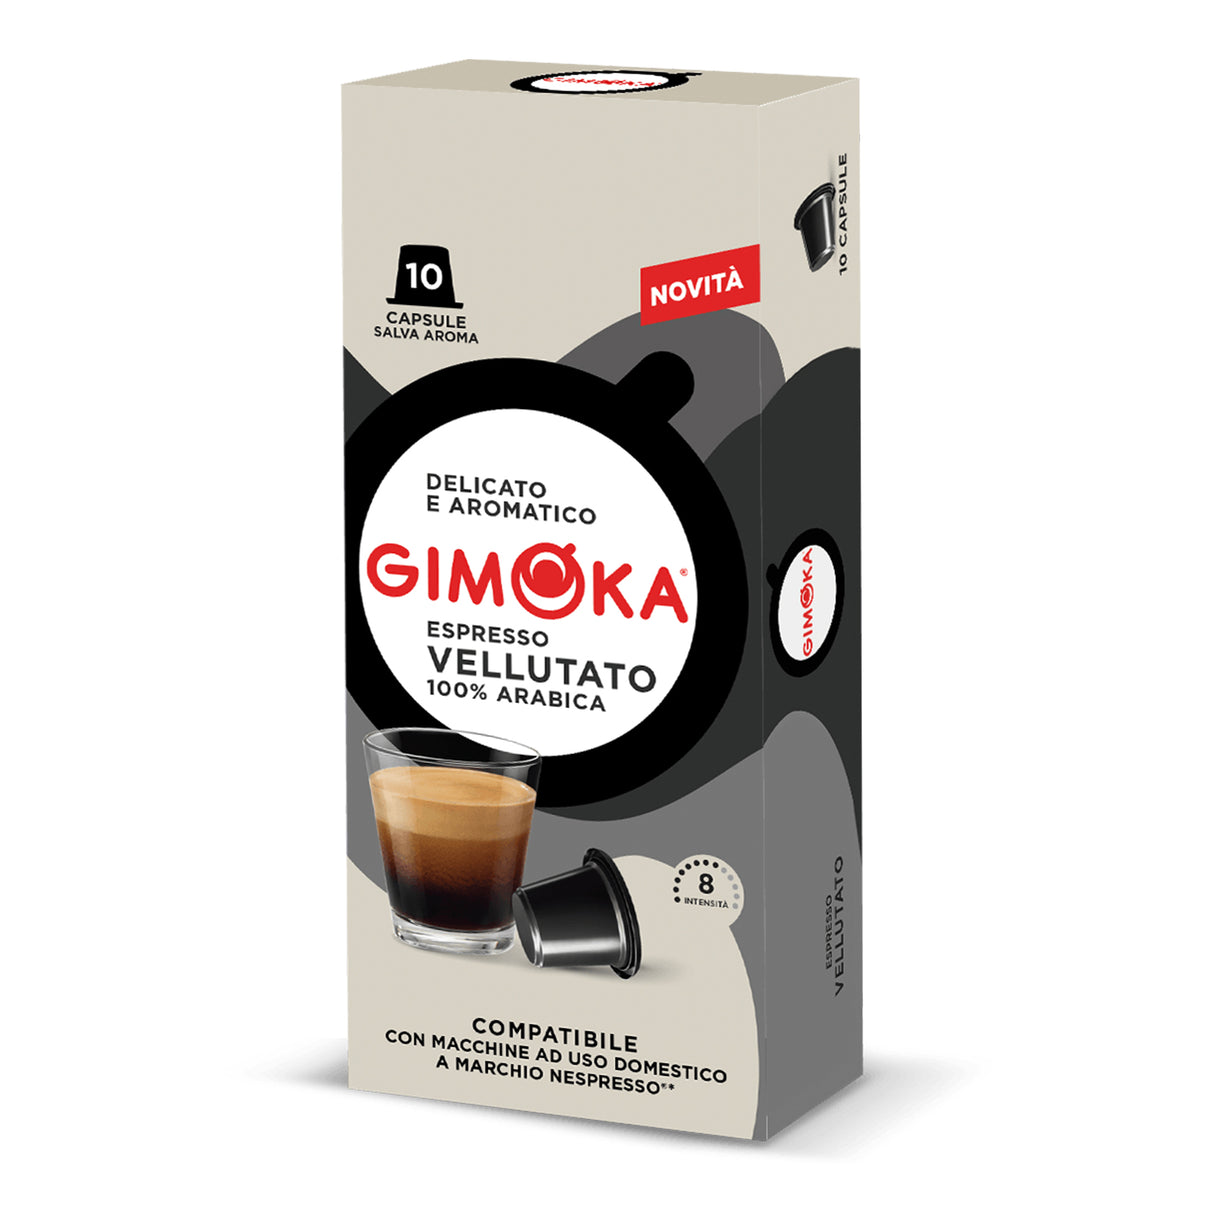 Gimoka Espresso Coffee Pods pack